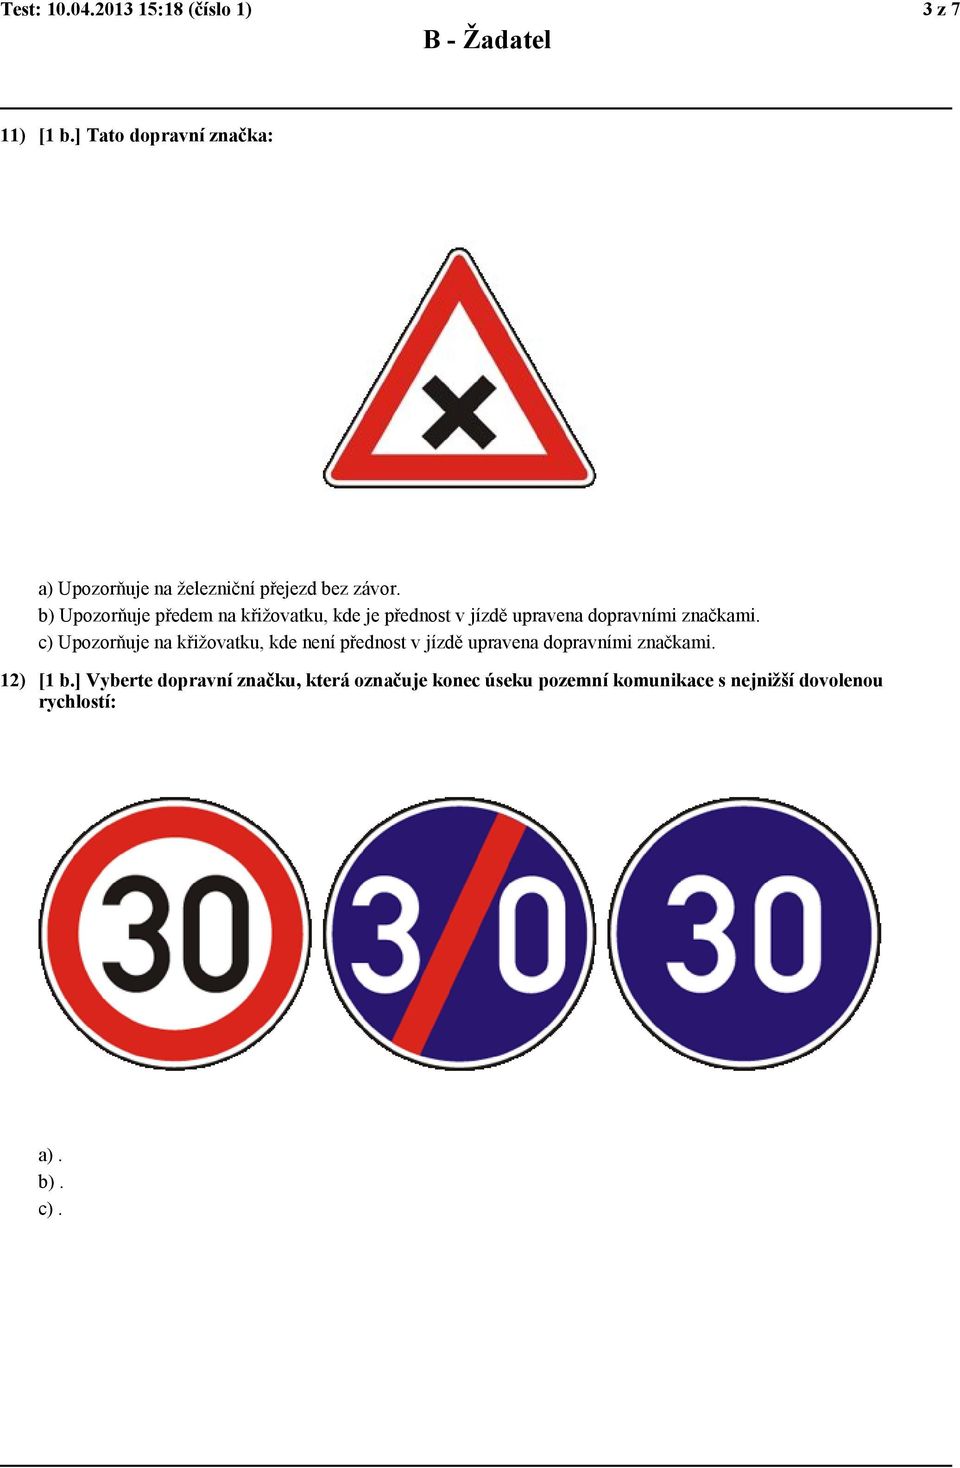 b) Upozorňuje předem na křižovatku, kde je přednost v jízdě upravena dopravními značkami.